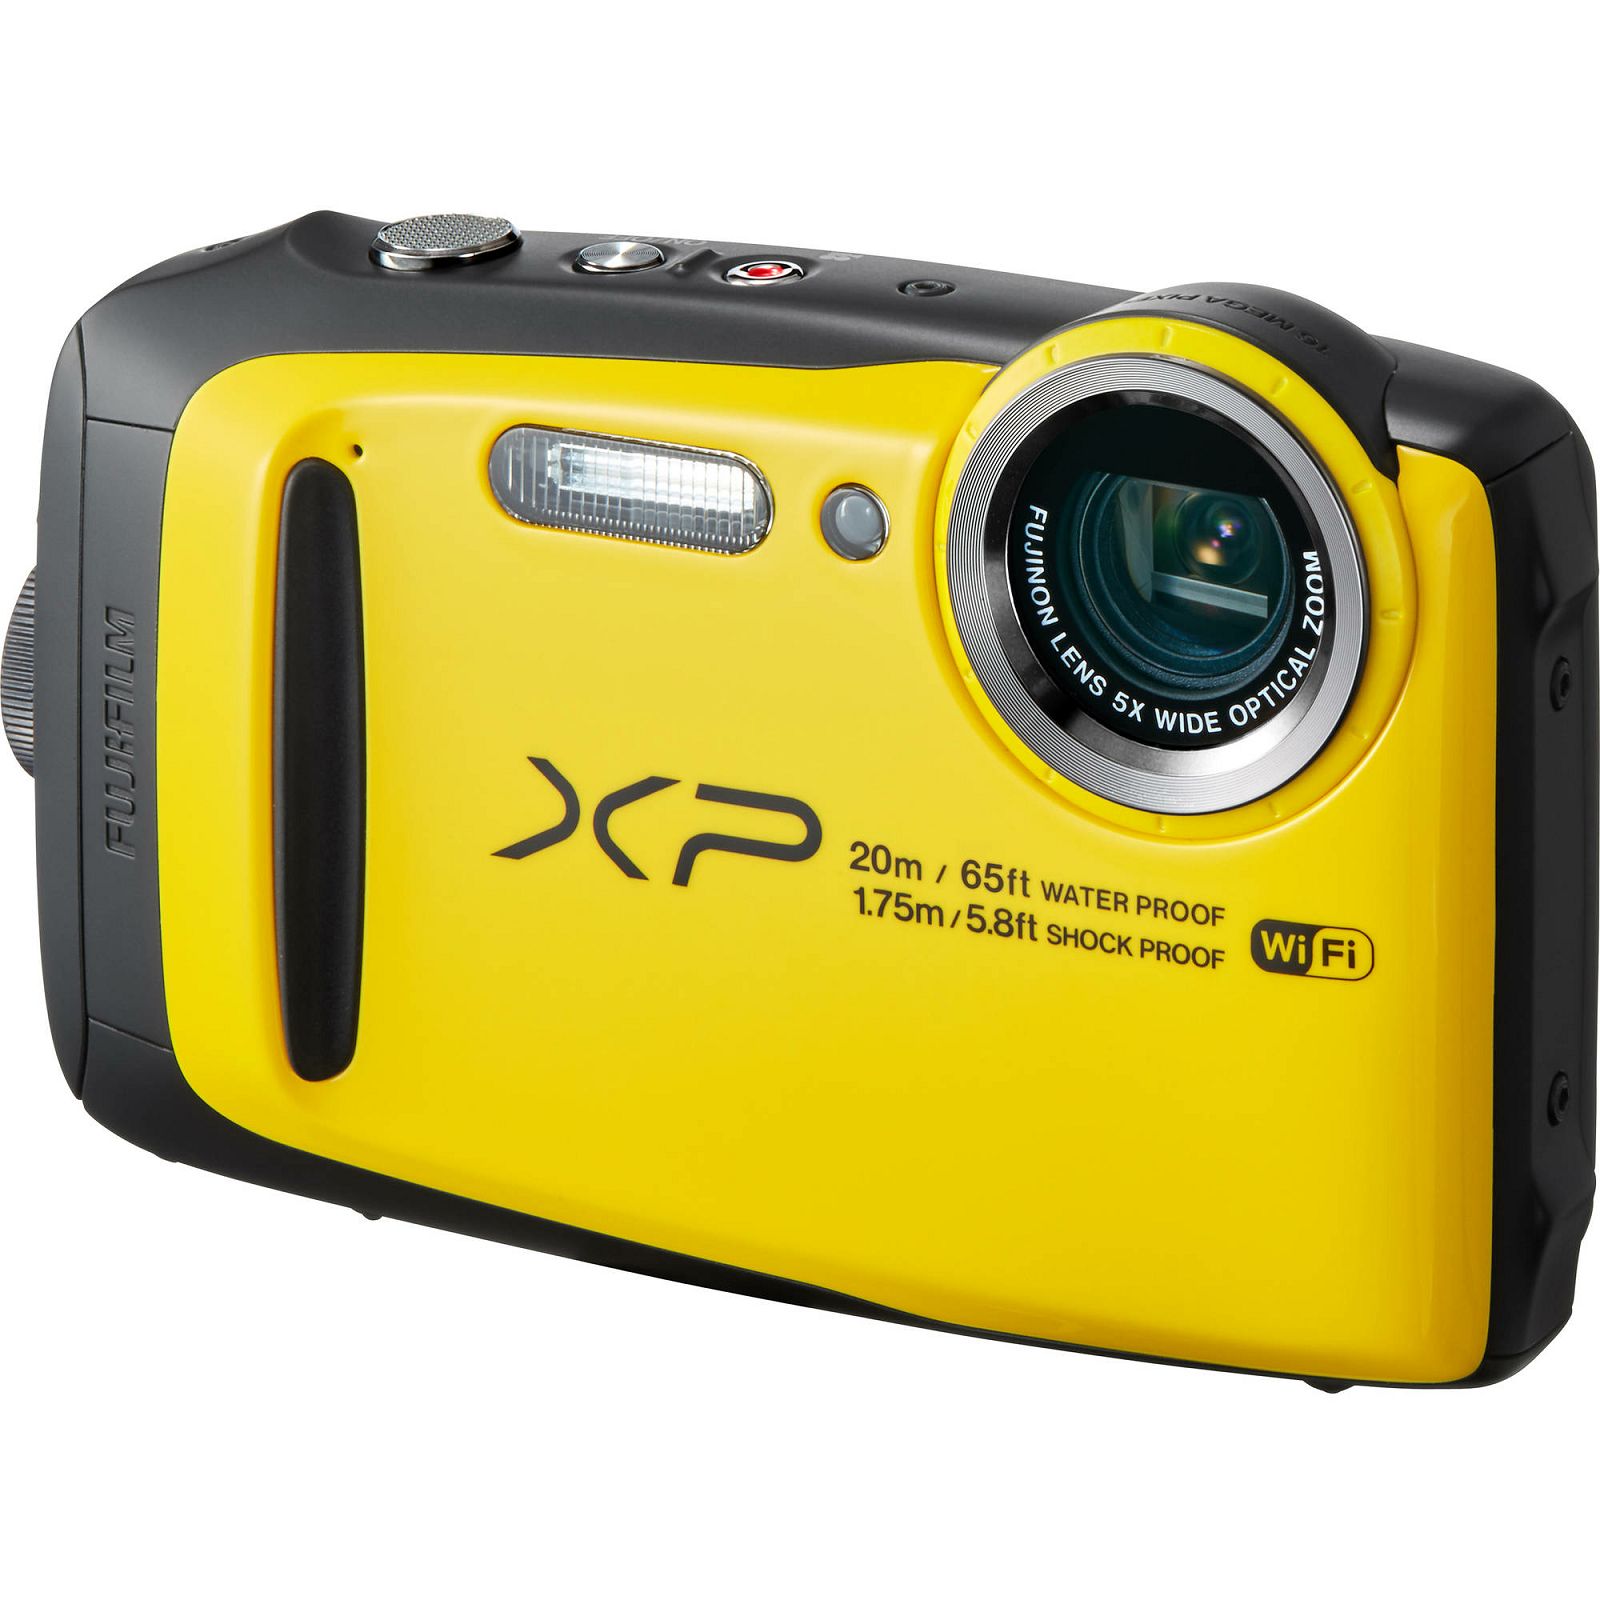 Fujifilm FinePix XP120 Yellow Fuji XP-120 žuti vodootporni podvodni digitalni fotoaparat WiFi remote 5x zoom 16.4Mpx 28mm BSI-CMOS sensor Digital camera